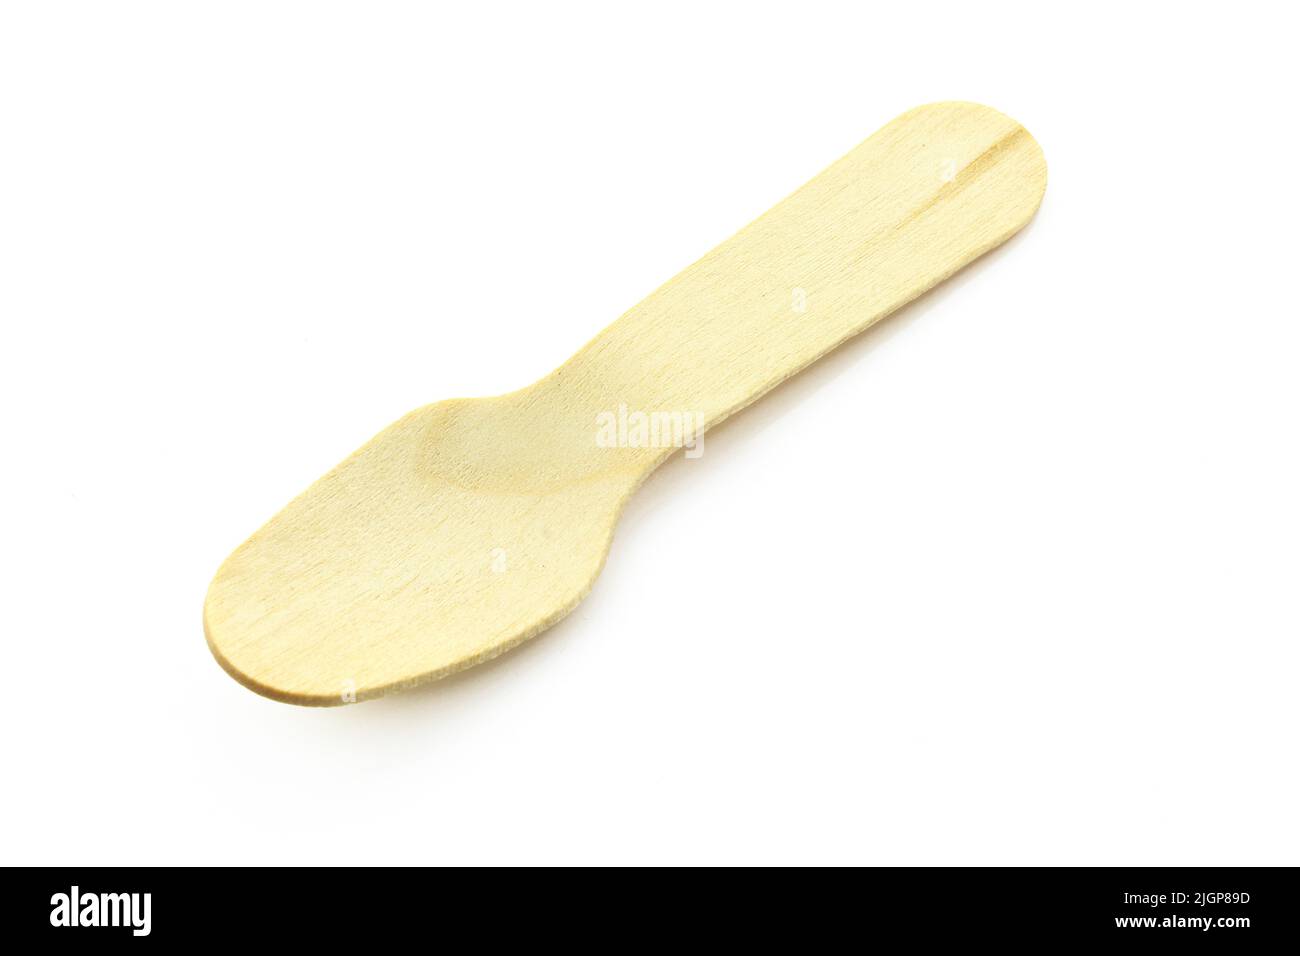 Piccolo cucchiaio di legno isolato su sfondo bianco Foto Stock